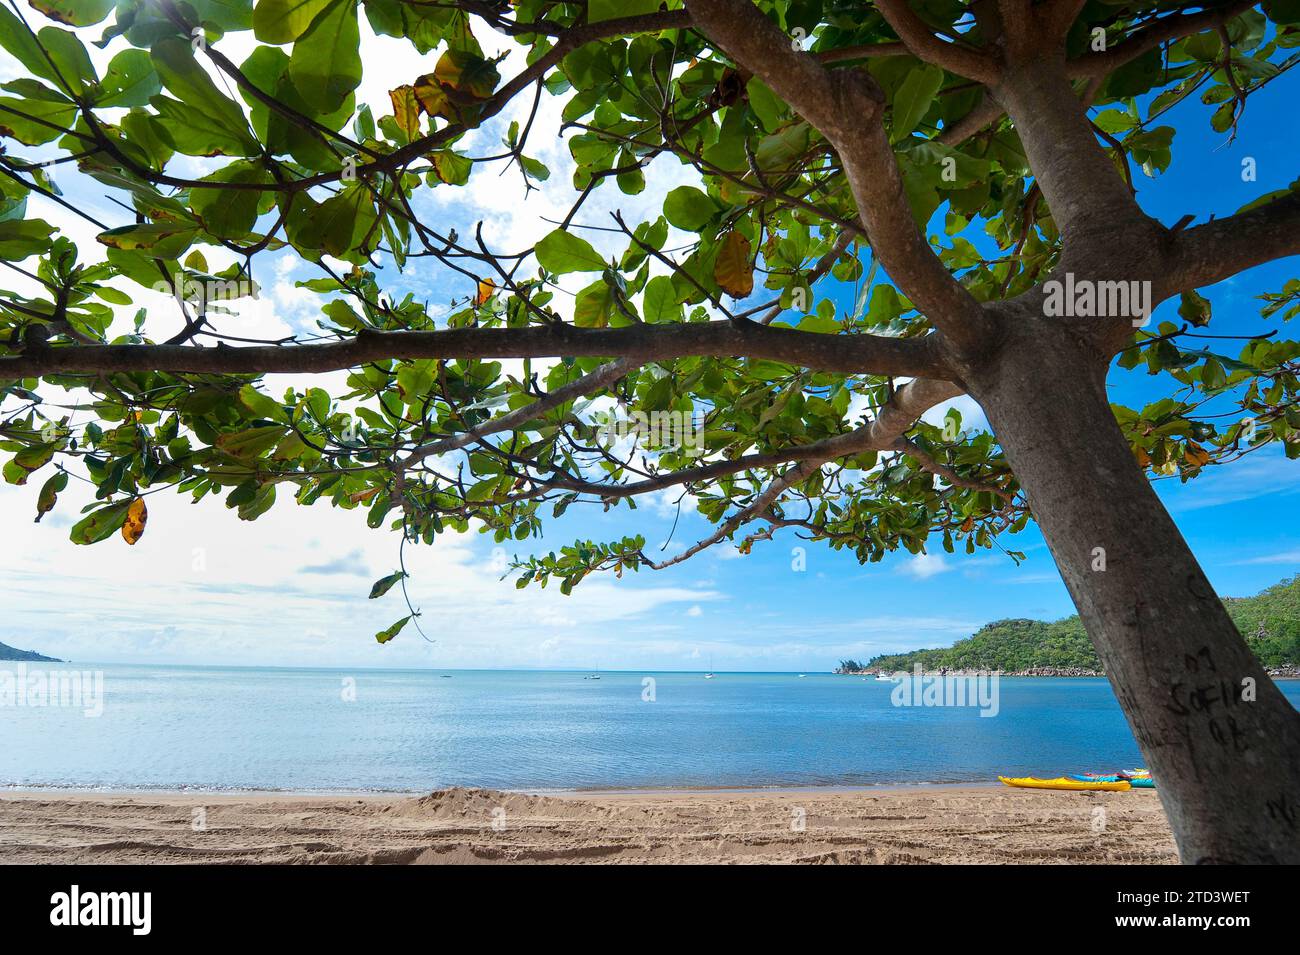 Plage avec ombre d'arbre, protection solaire, rayonnement UV, protection, canopée, île magnétique, Australie Banque D'Images